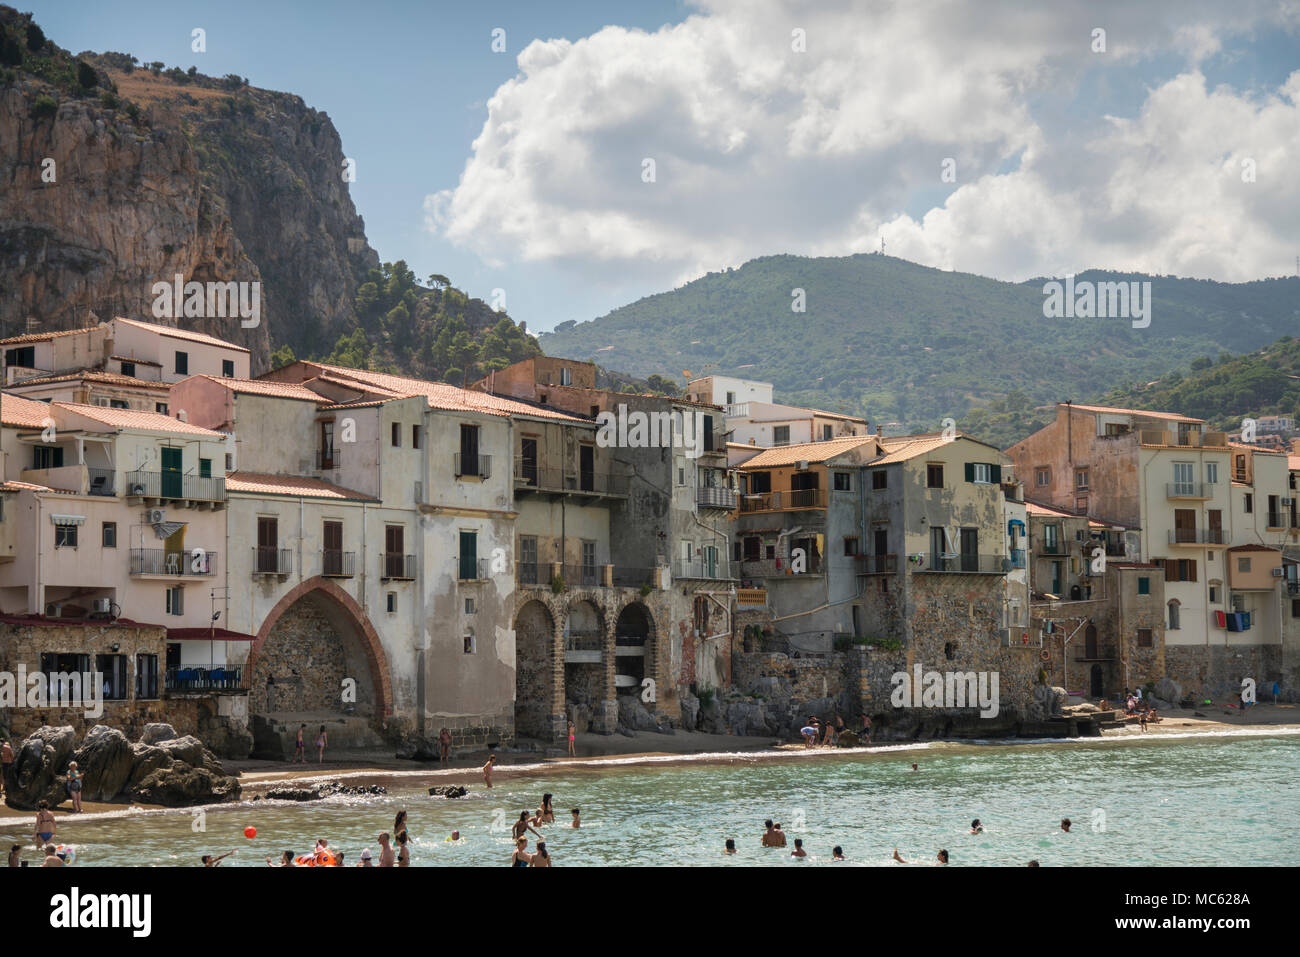 Promontoire rocheux et les bâtiments historiques donnant sur la plage de sable à Cefalu, Sicile, Italie, avec les vacanciers de nager dans la mer. Banque D'Images